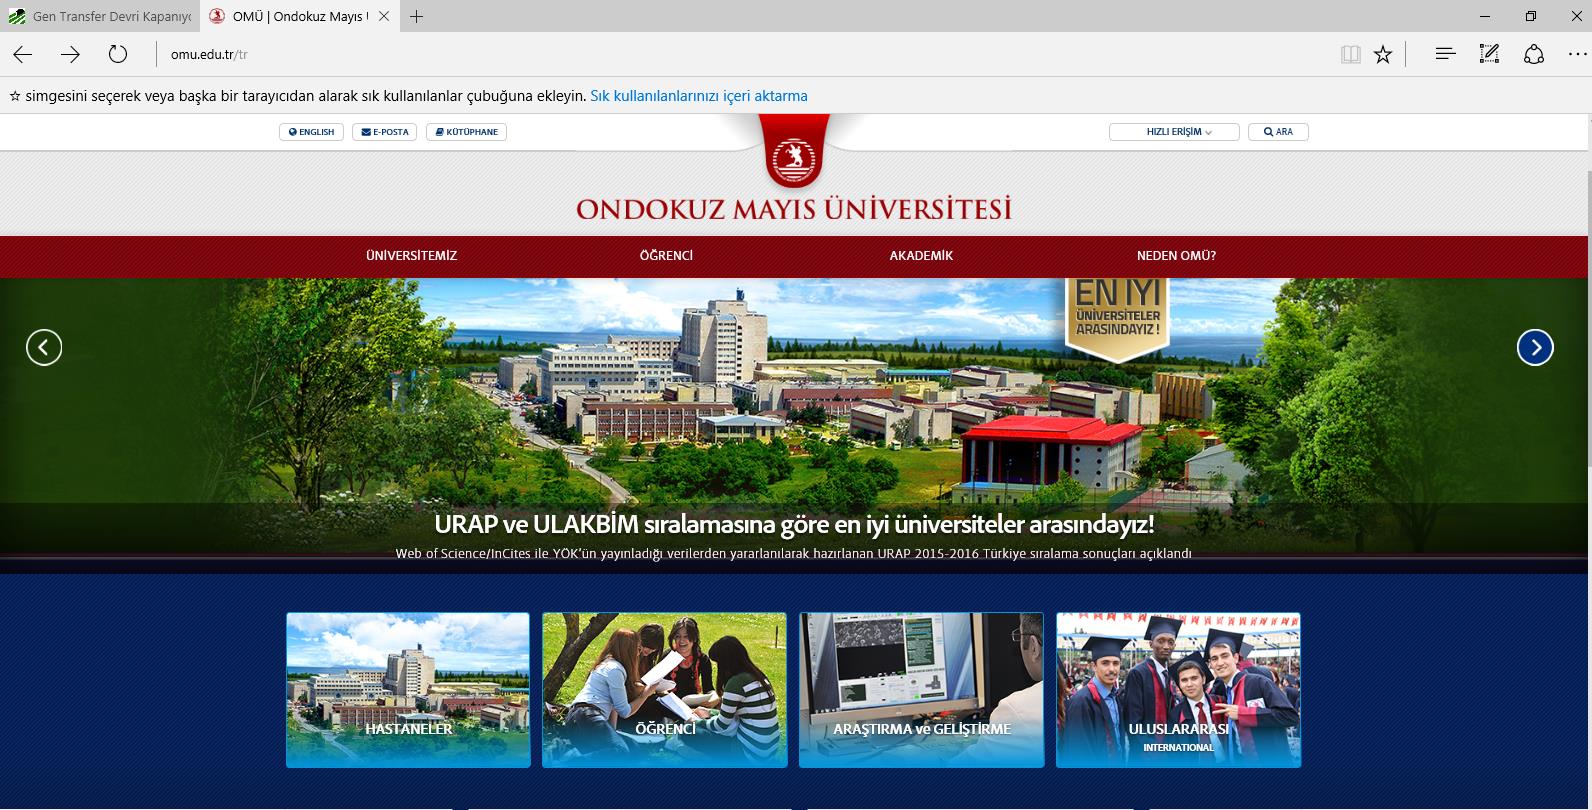 Üniversitemiz web sayfasından (www.omu.edu.